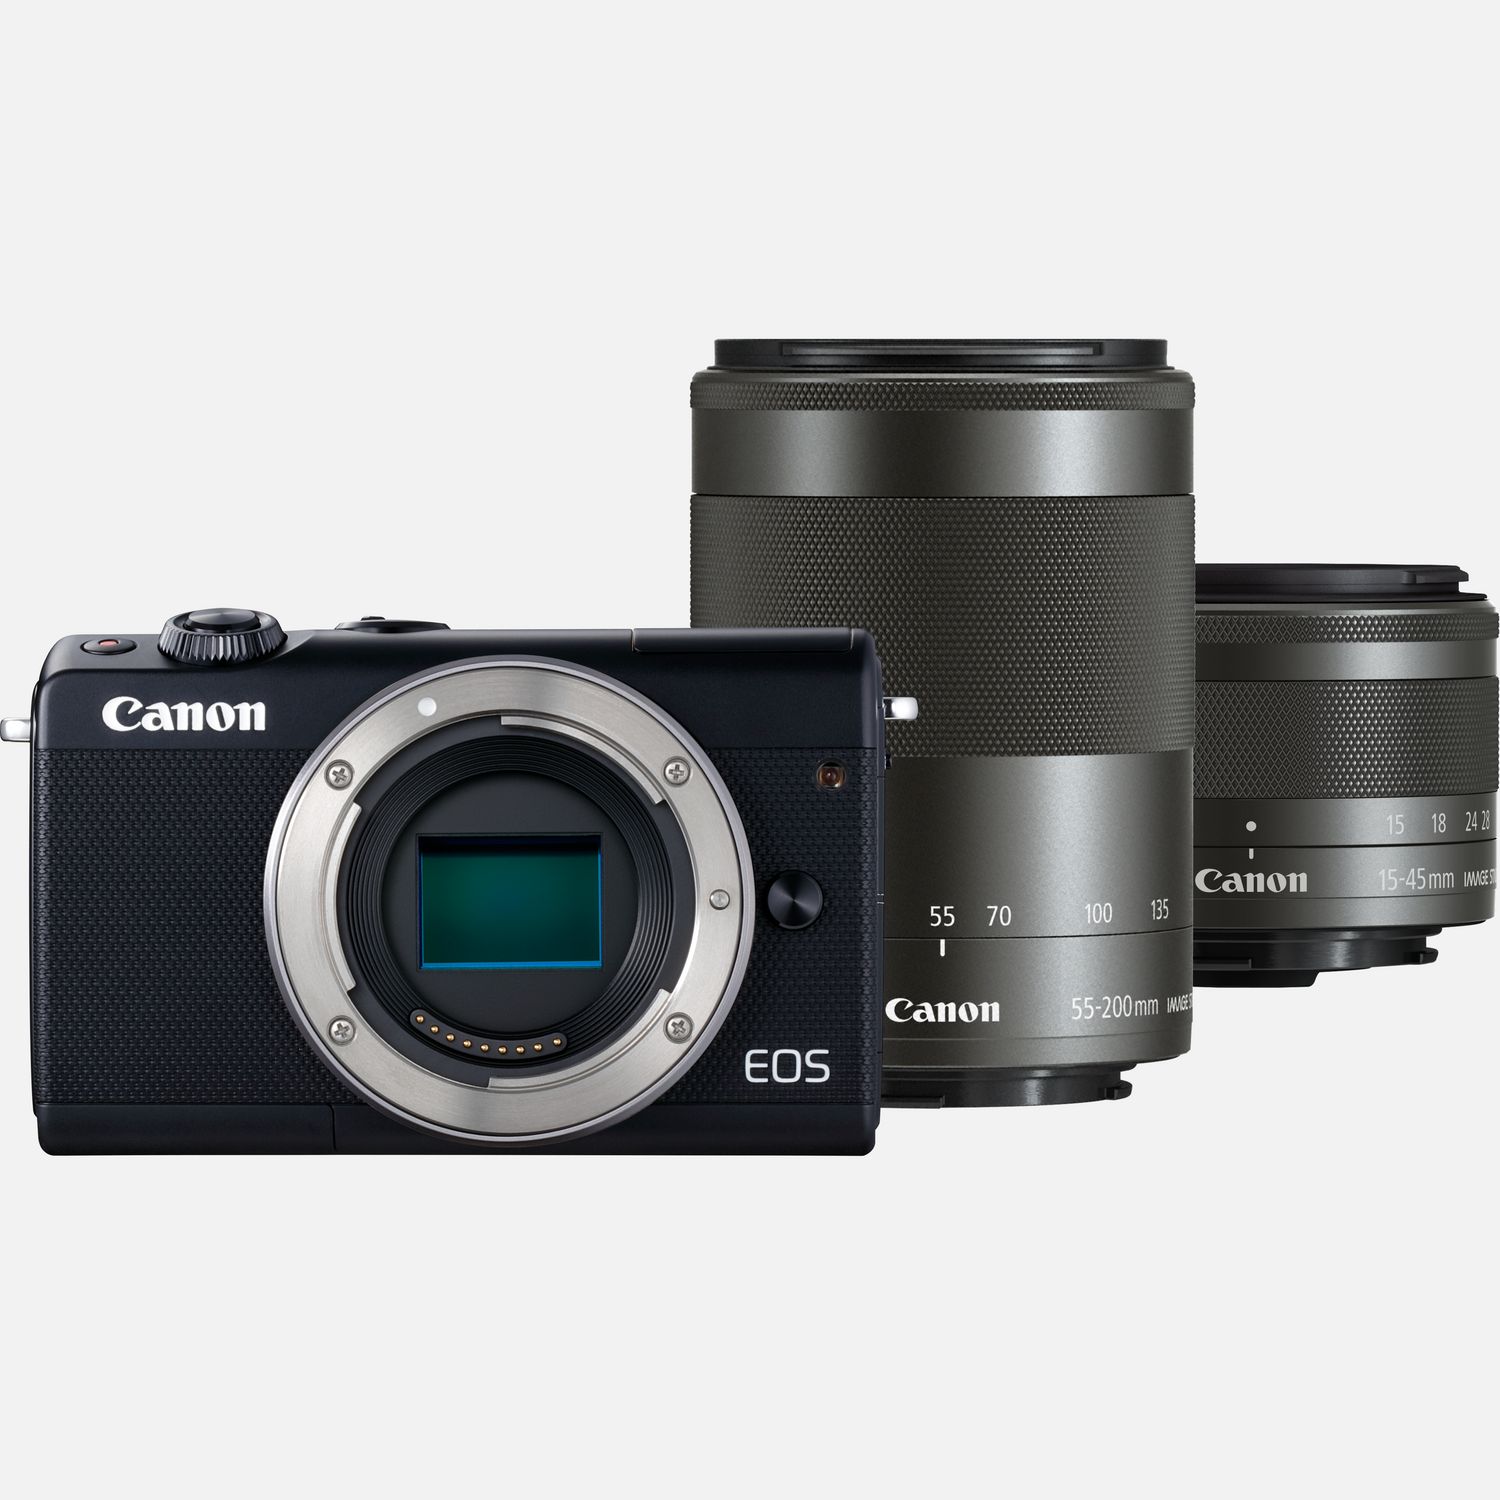 Buy Canon EOS M100 Black + EF-M 15-45mm IS STM Lens Black + EF-M 55